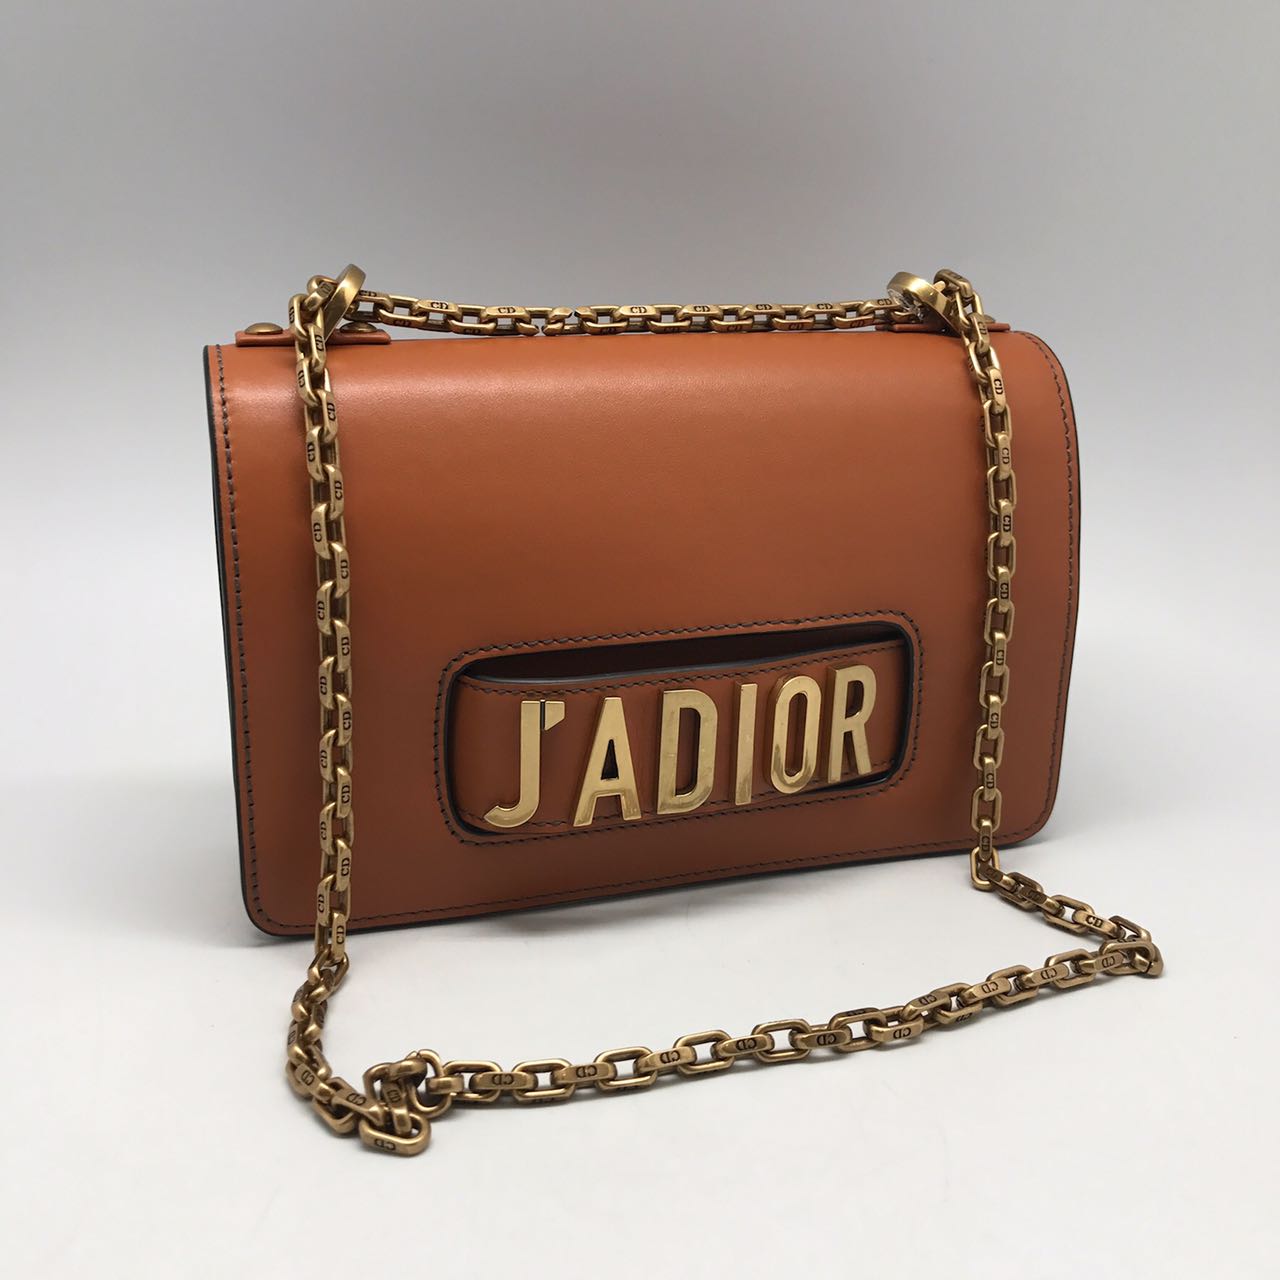 Женская сумка Christian Dior JaDior коричневая с цепочкой